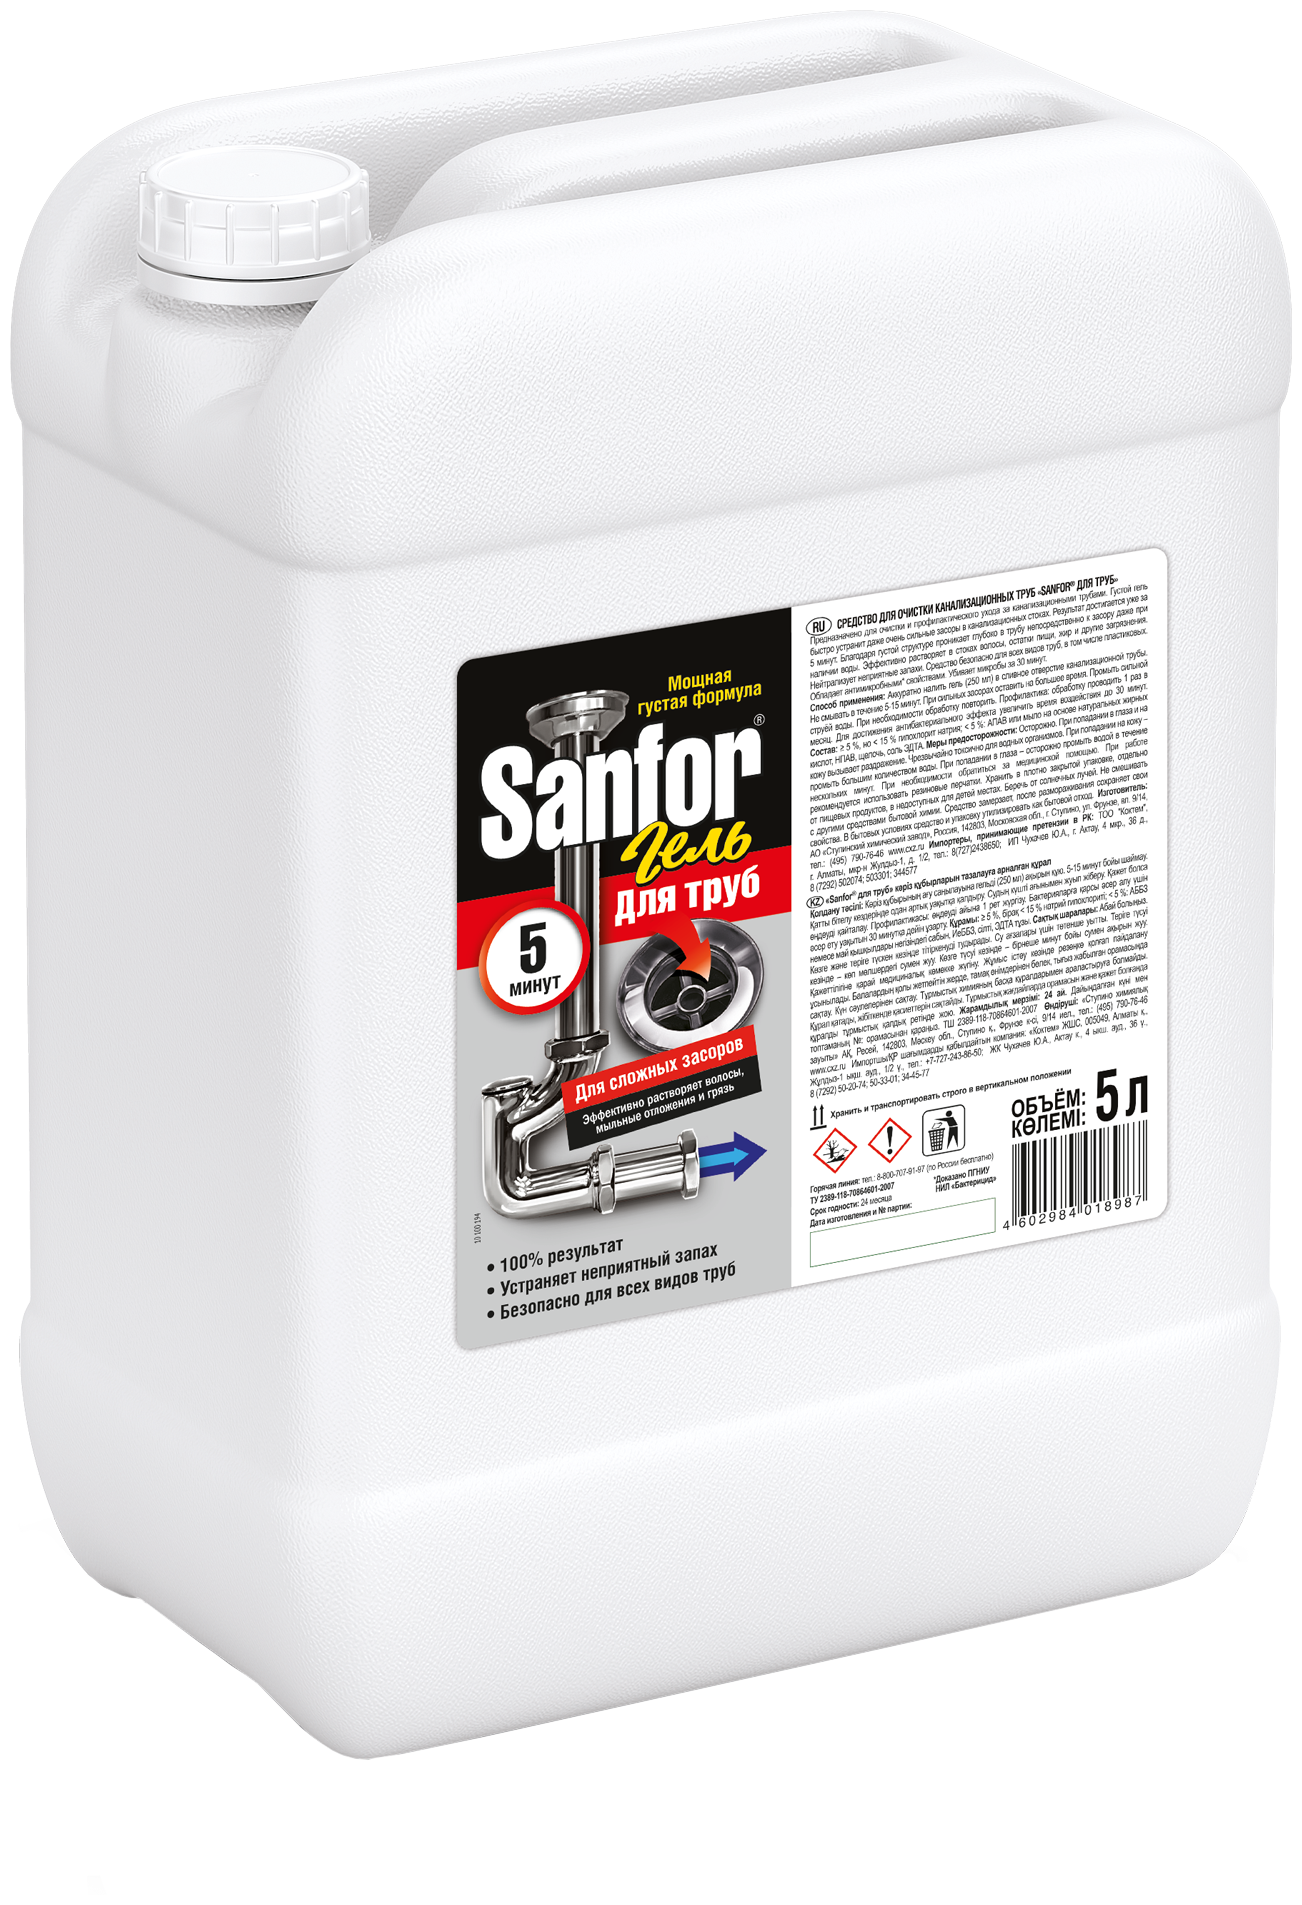 Sanfor гель для сложных засоров труб 5 минут